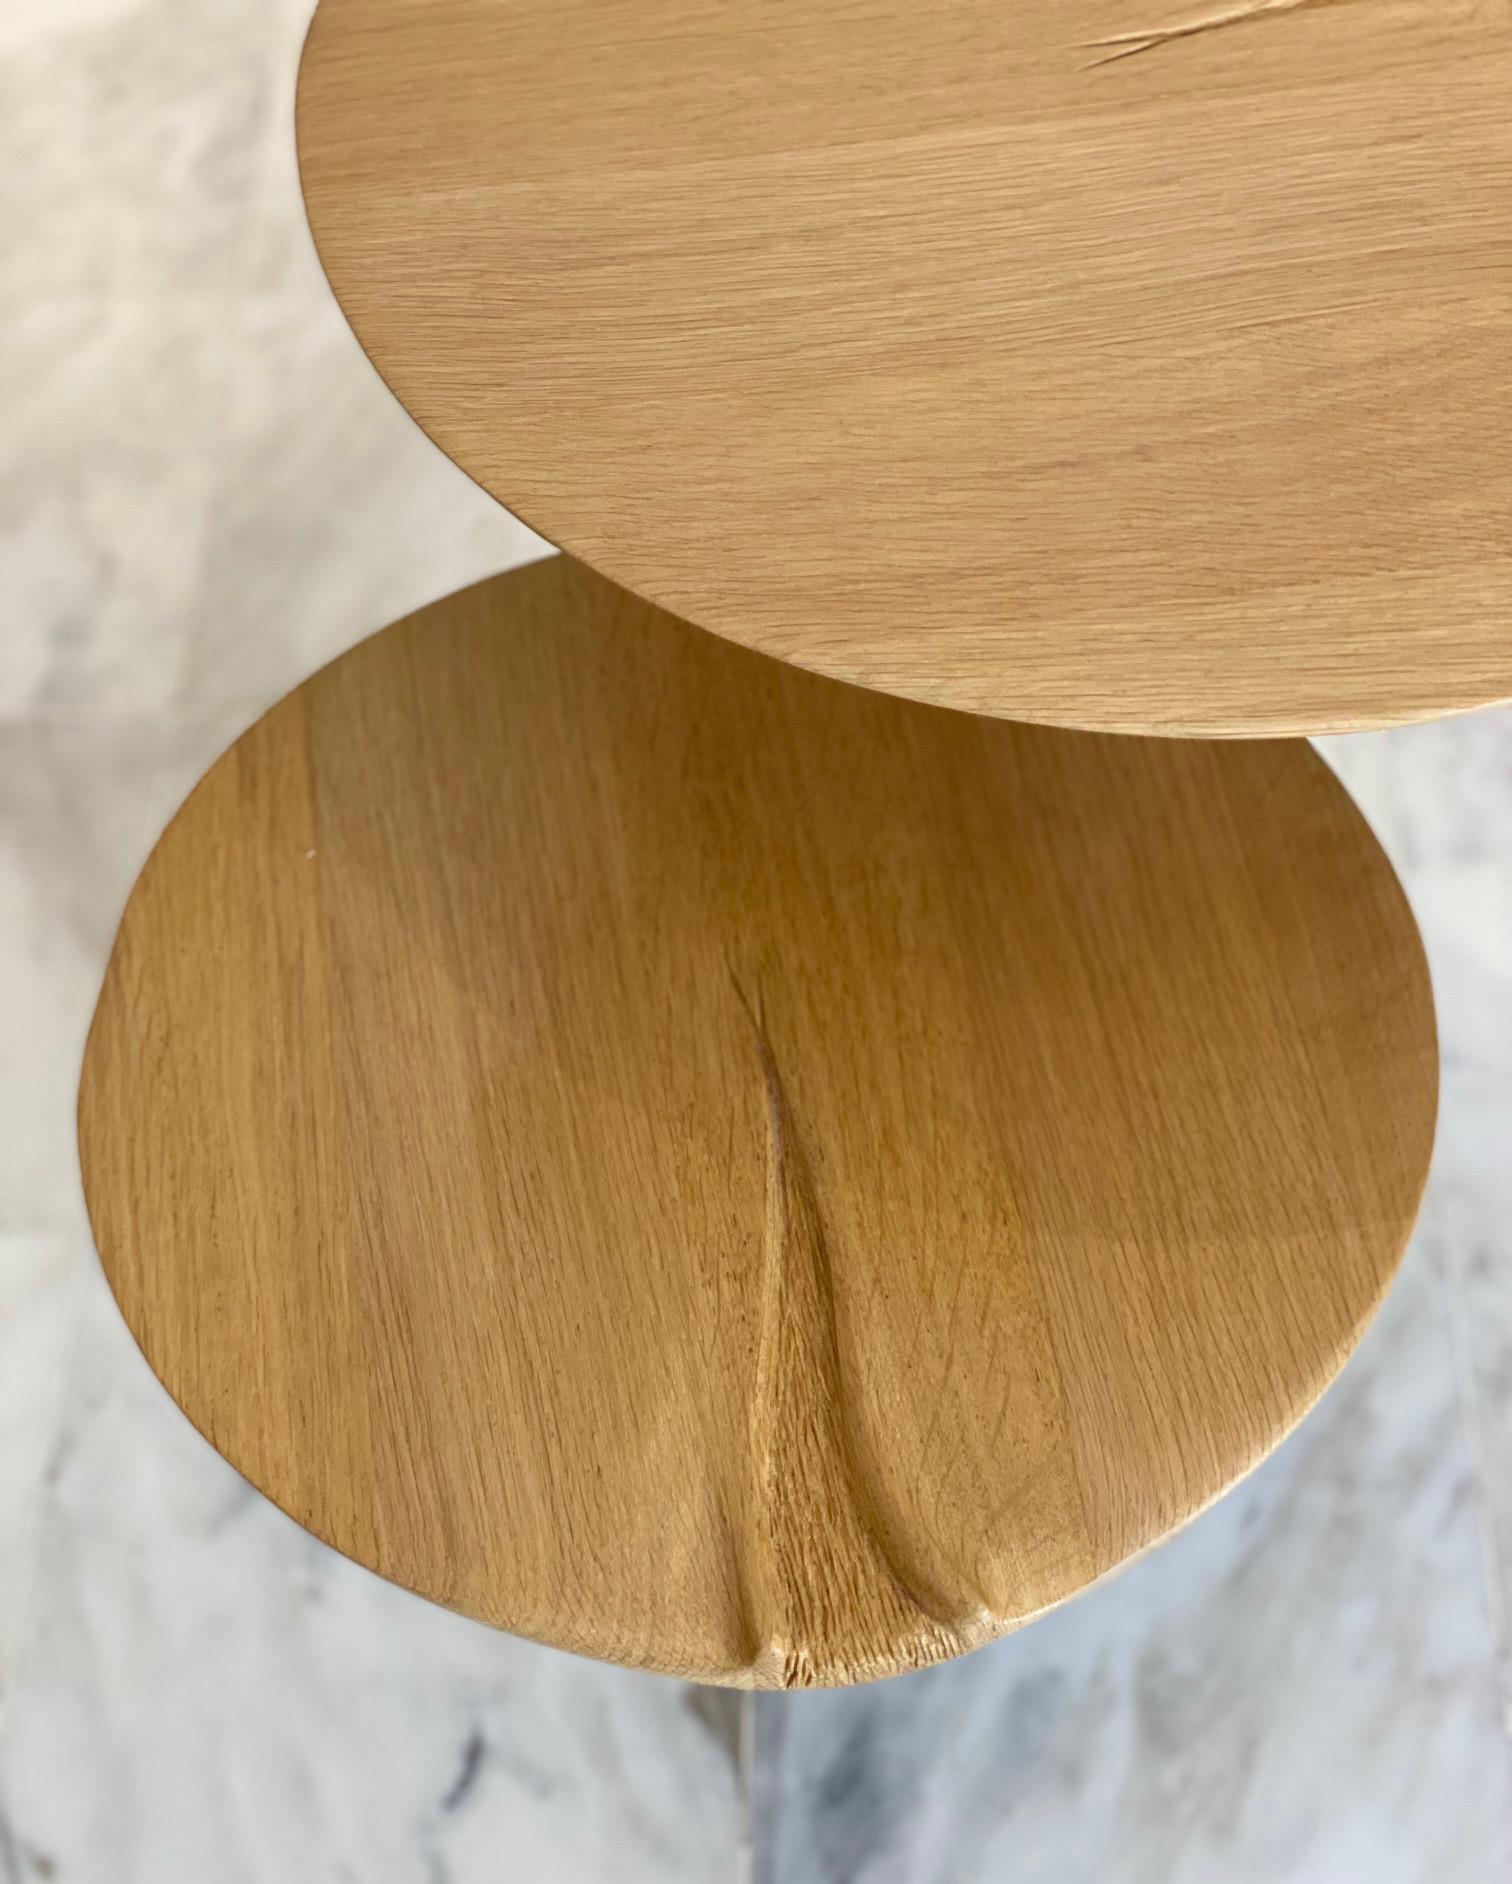 Oak Side Table from 